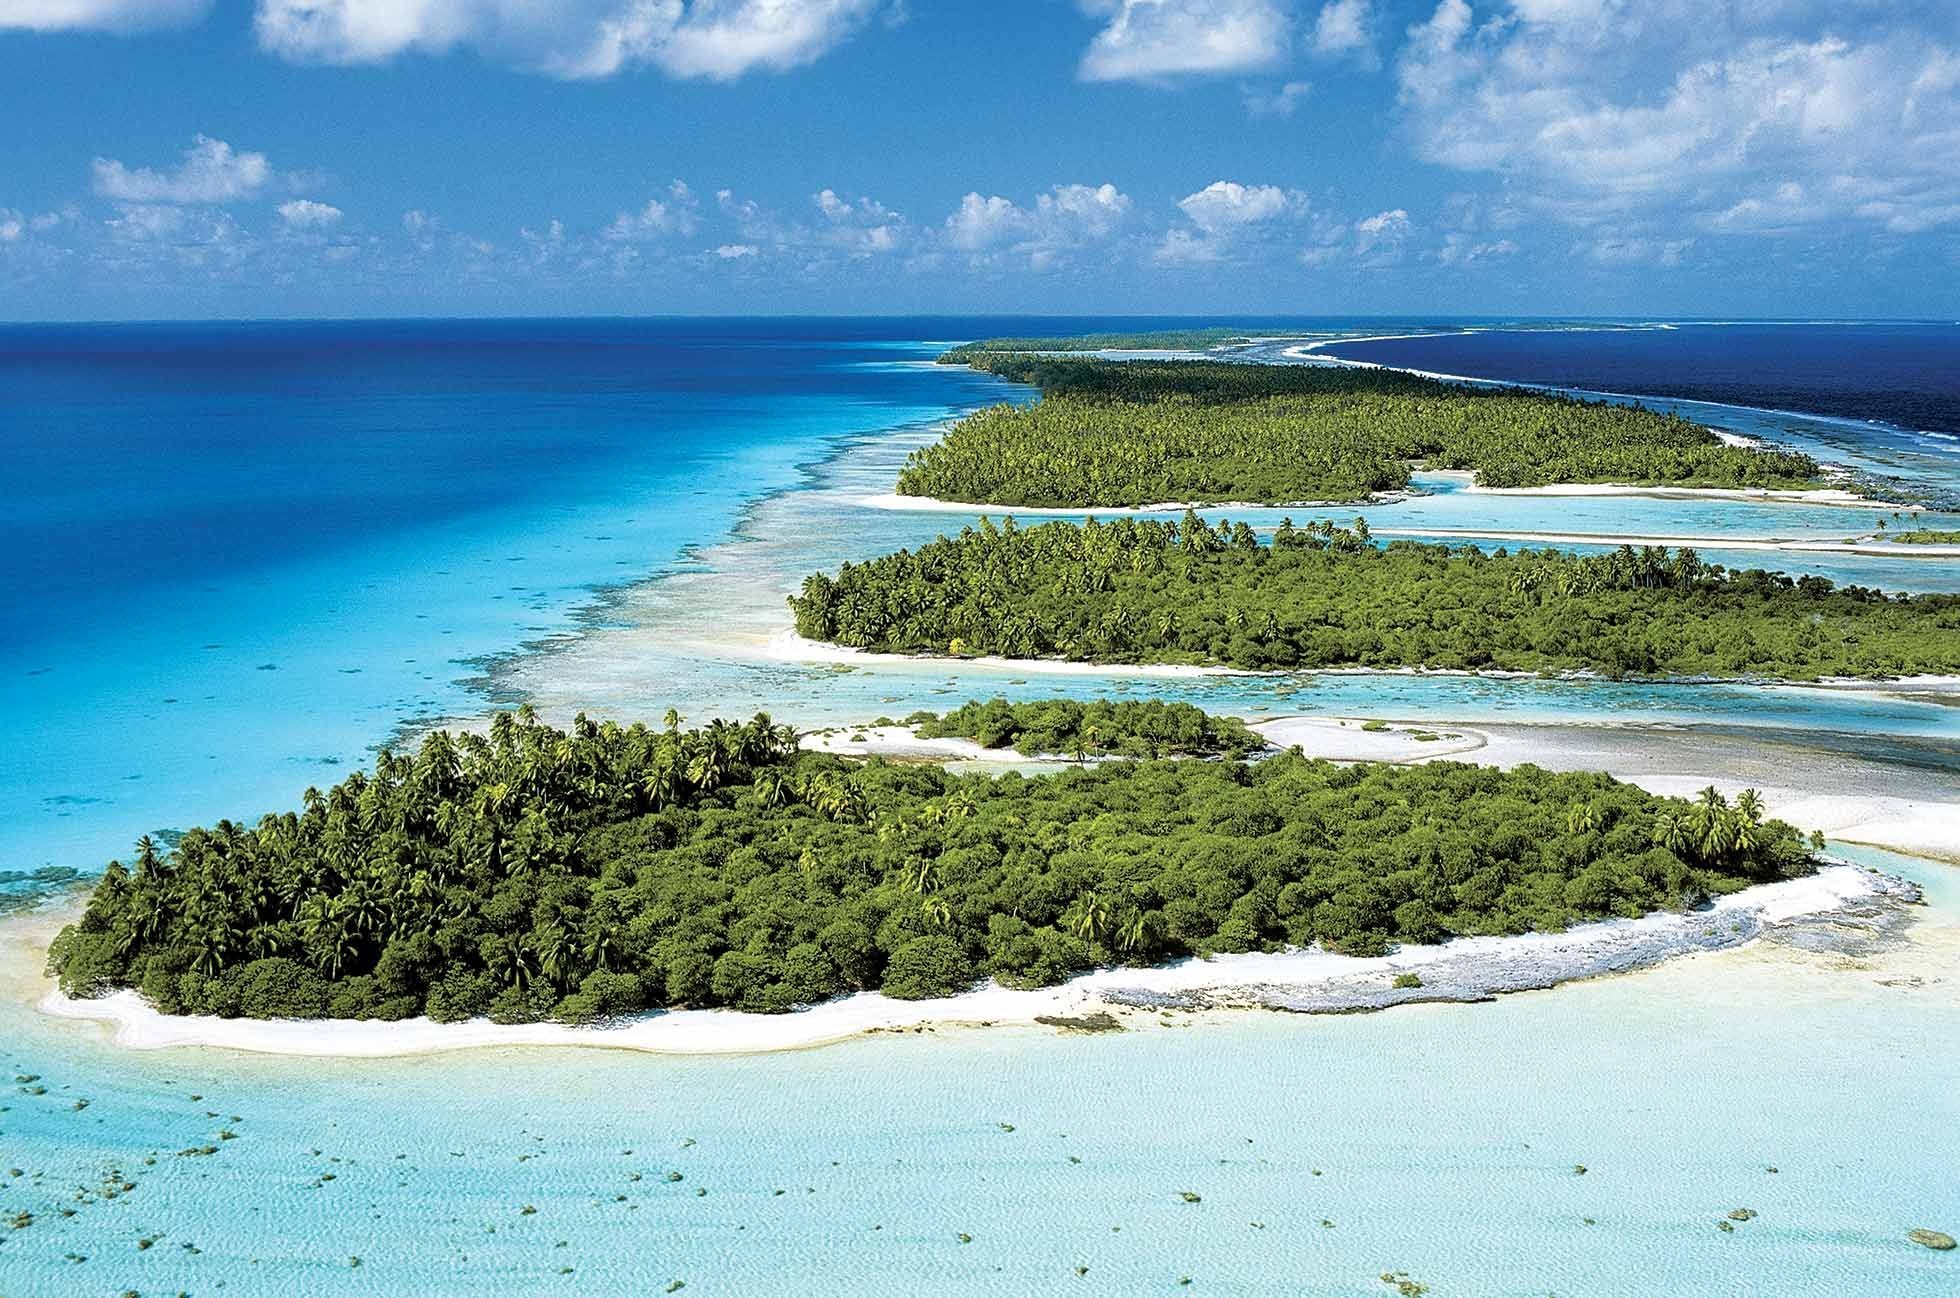 Крупнейшие острова архипелаги тихого океана. Архипелаг Туамоту, французская Полинезия. Атолл Рангироа. Рангироа остров. Группа островов в архипелаге Туамоту.